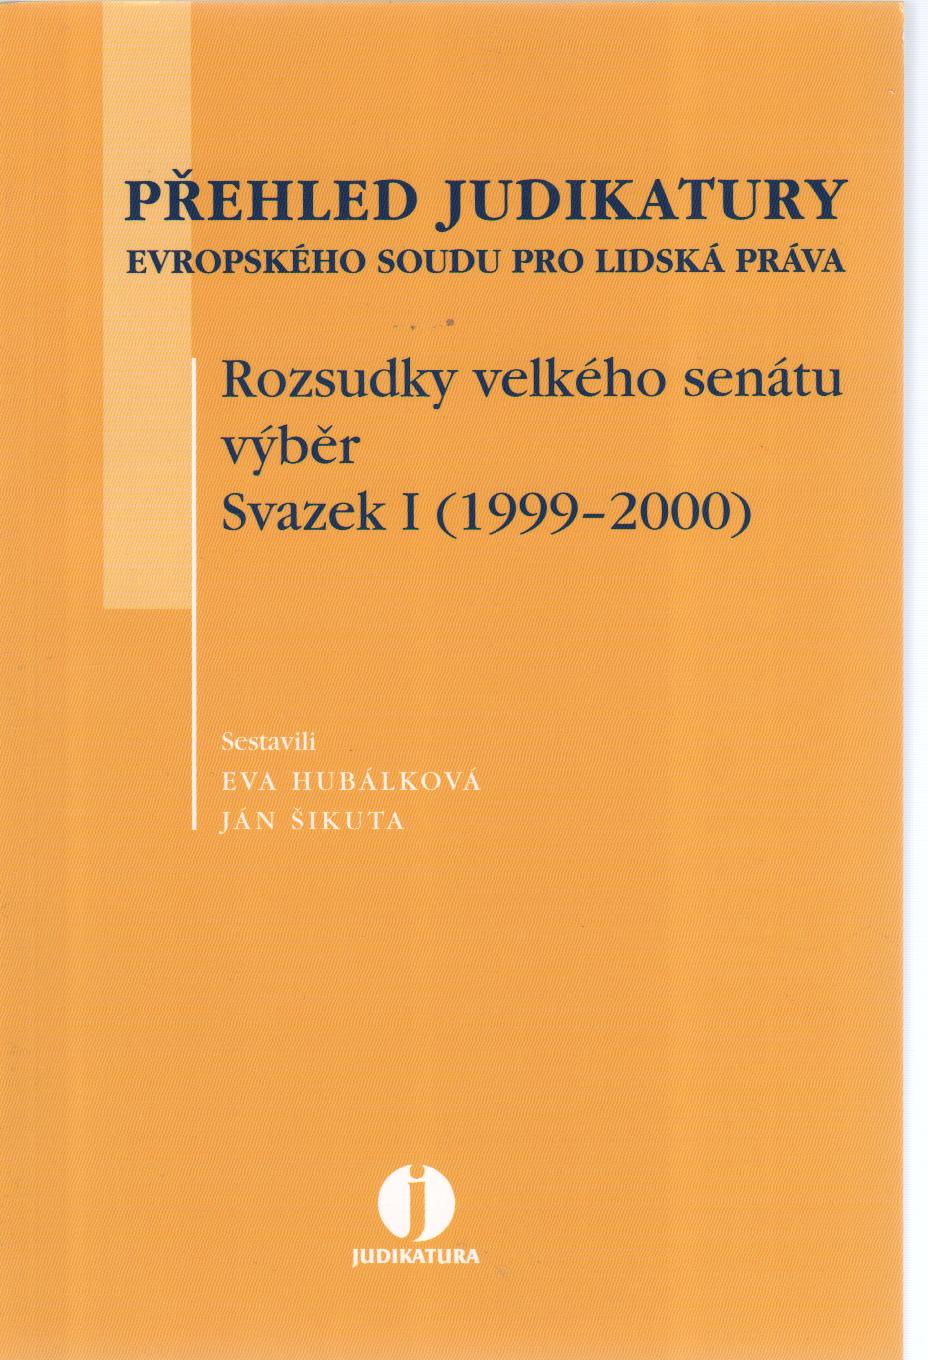 Přehled judikatury ESLP. Rozsudky velkého senátu.Výběr Svazek I. (1999-2000)